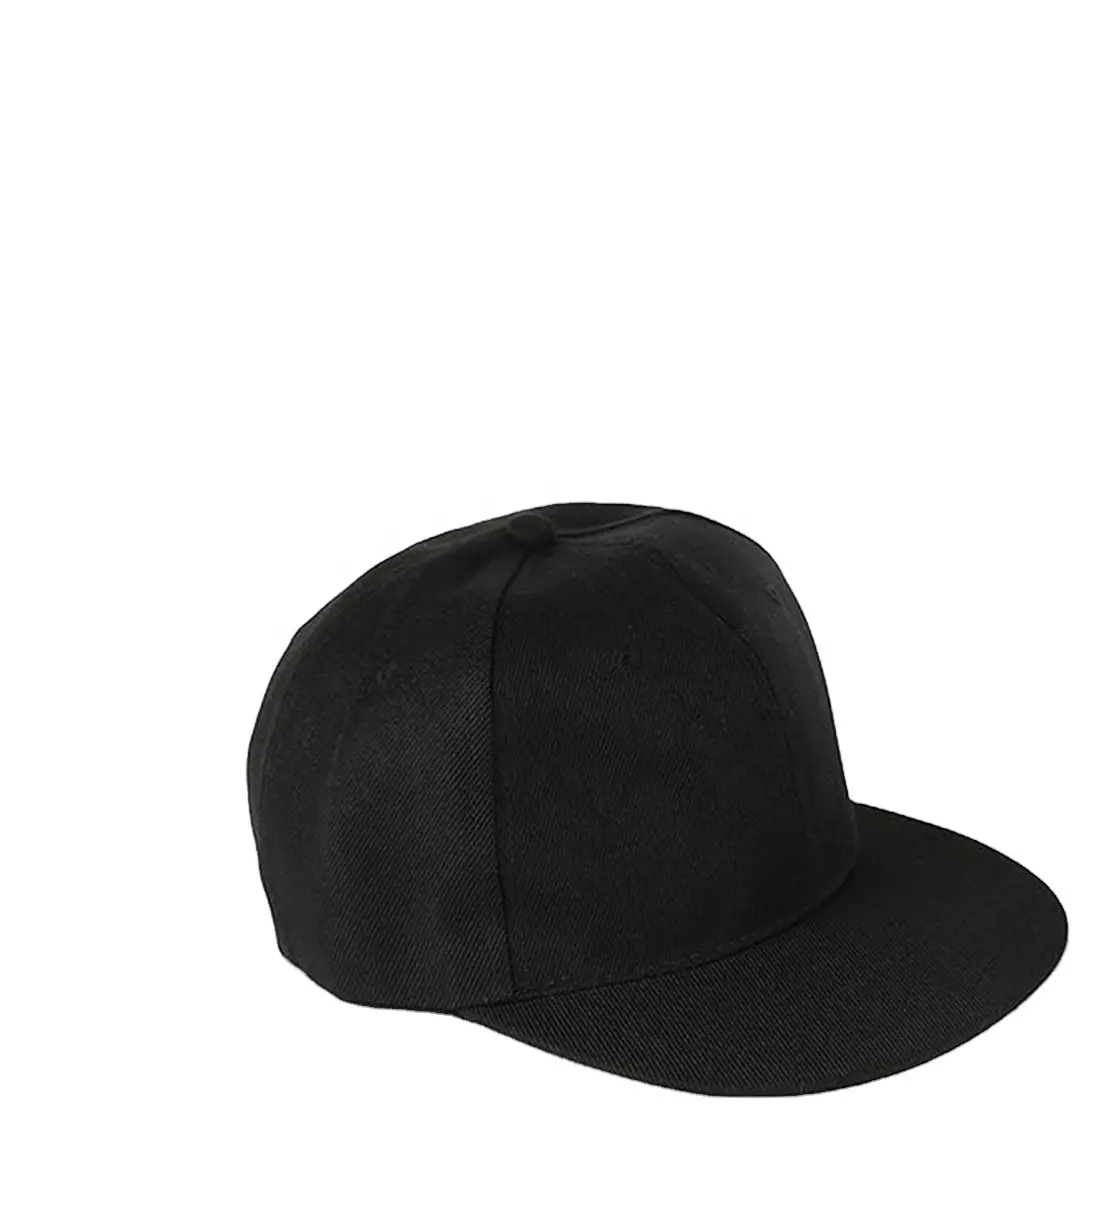 Premium kalite yeni gelenler moda nakış yama beyzbol şapkası şoför şapkası kapaklar özel Logo